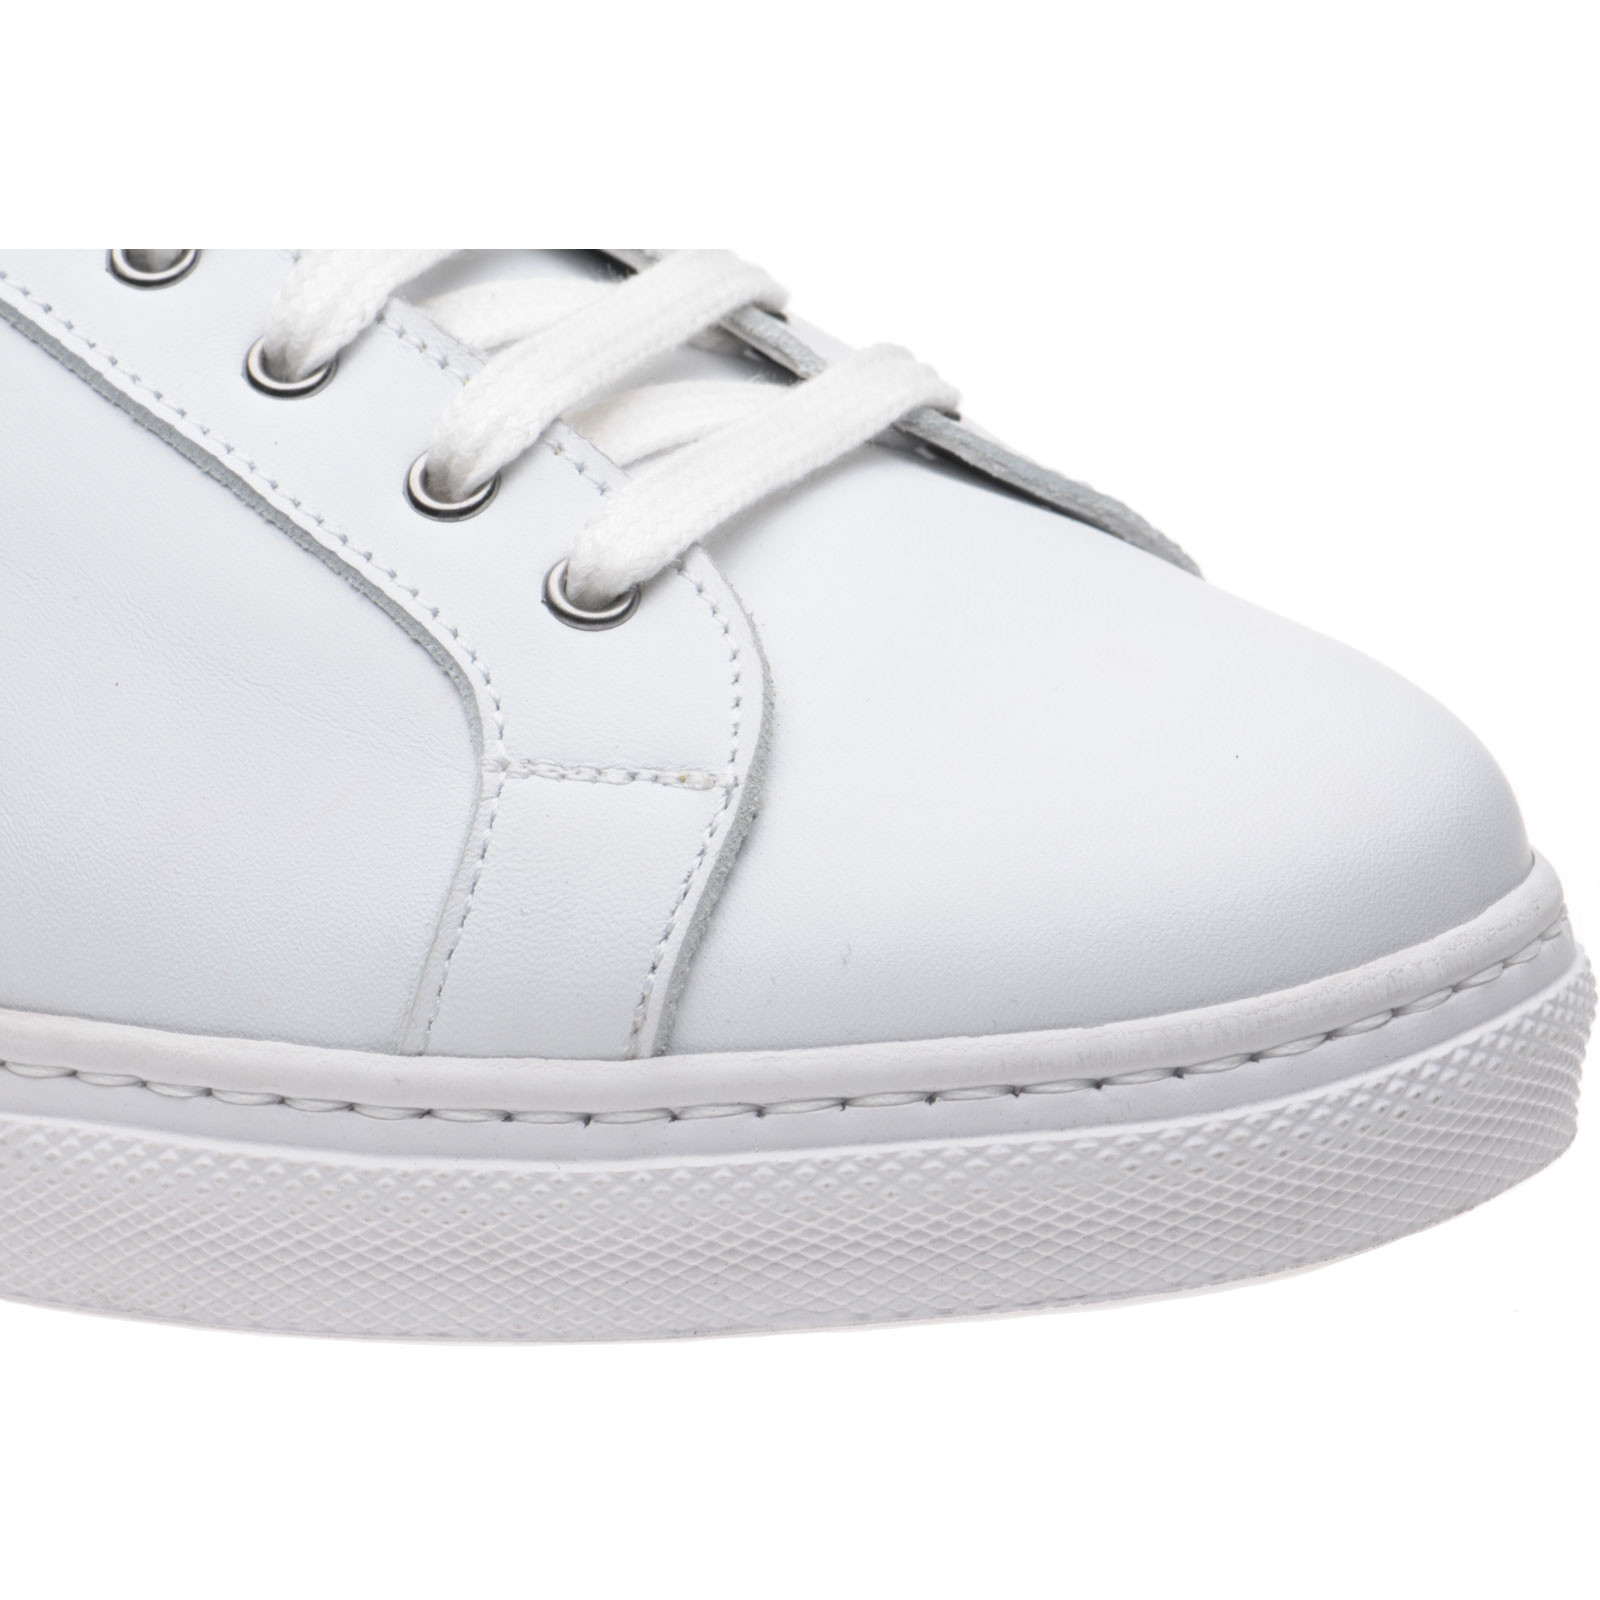 Herring shoes | Herring Sneakers | Sebastian rubber-soled Derby shoes ...